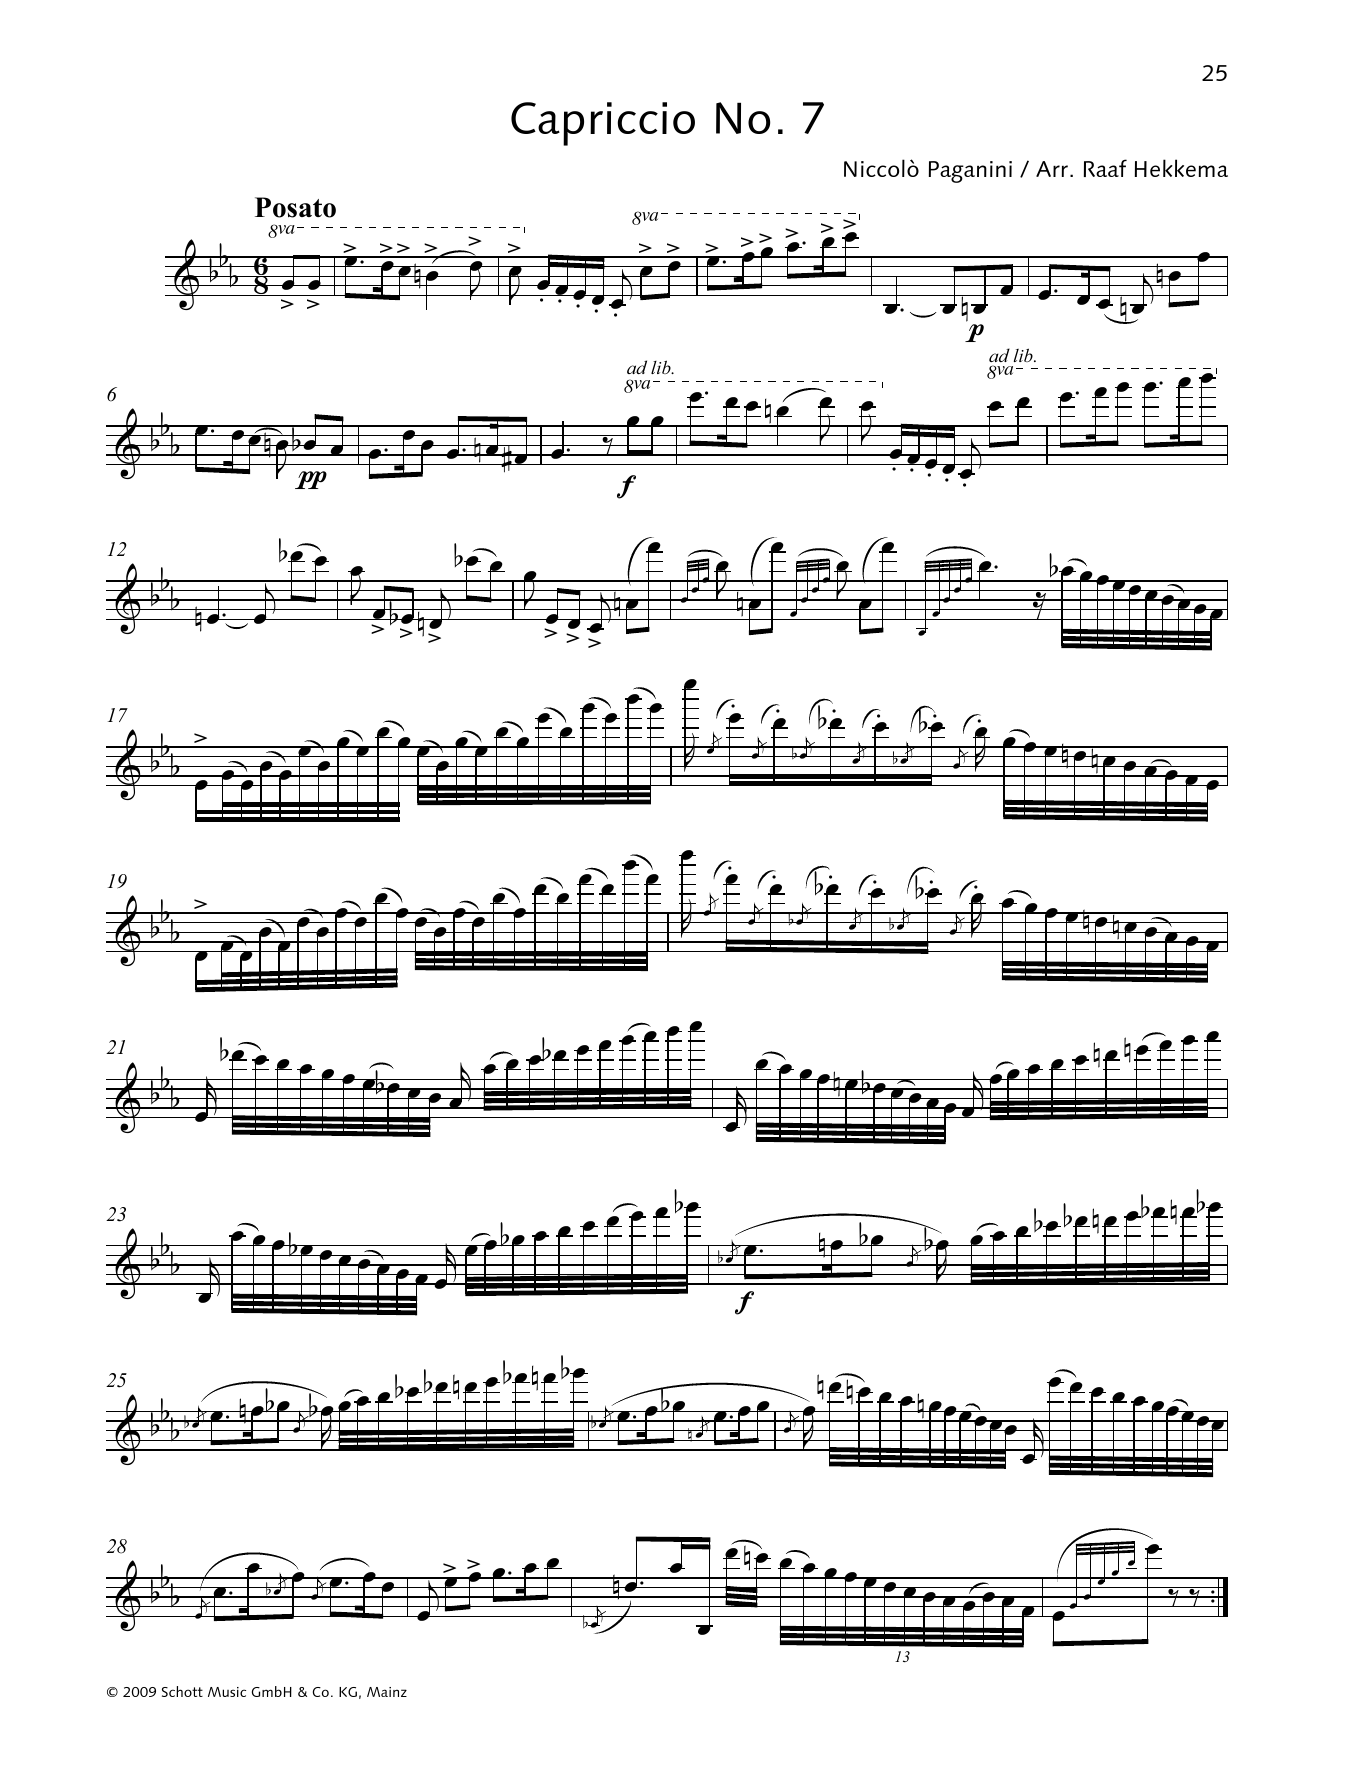 Download Niccolo Paganini Capriccio No. 7 Sheet Music